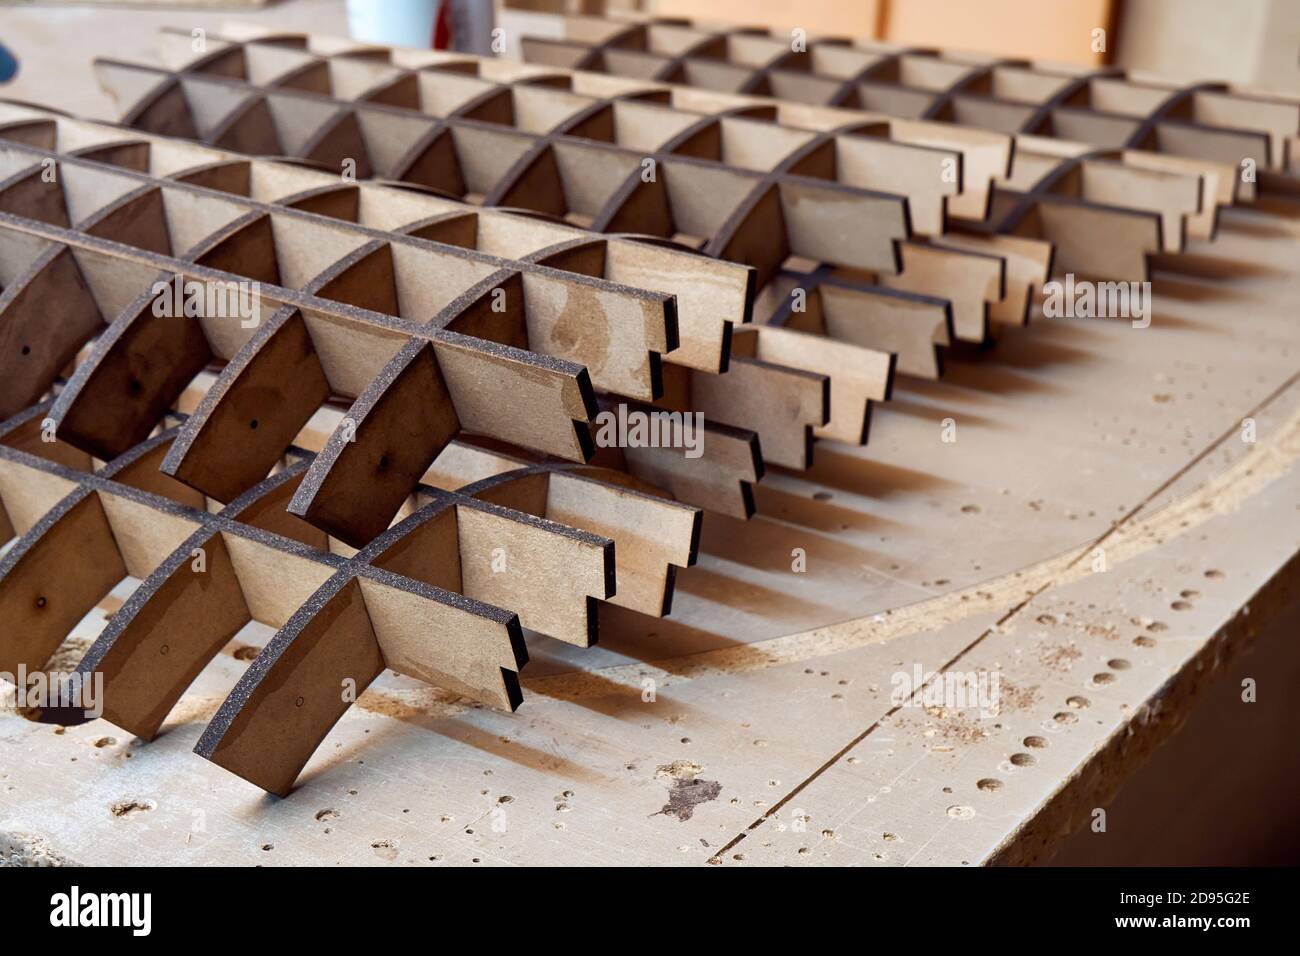 Tischlerei. MDF-Rahmen zum Biegen von Sperrholz in der Werkstatt. Biegen Möbel Herstellung Stockfoto